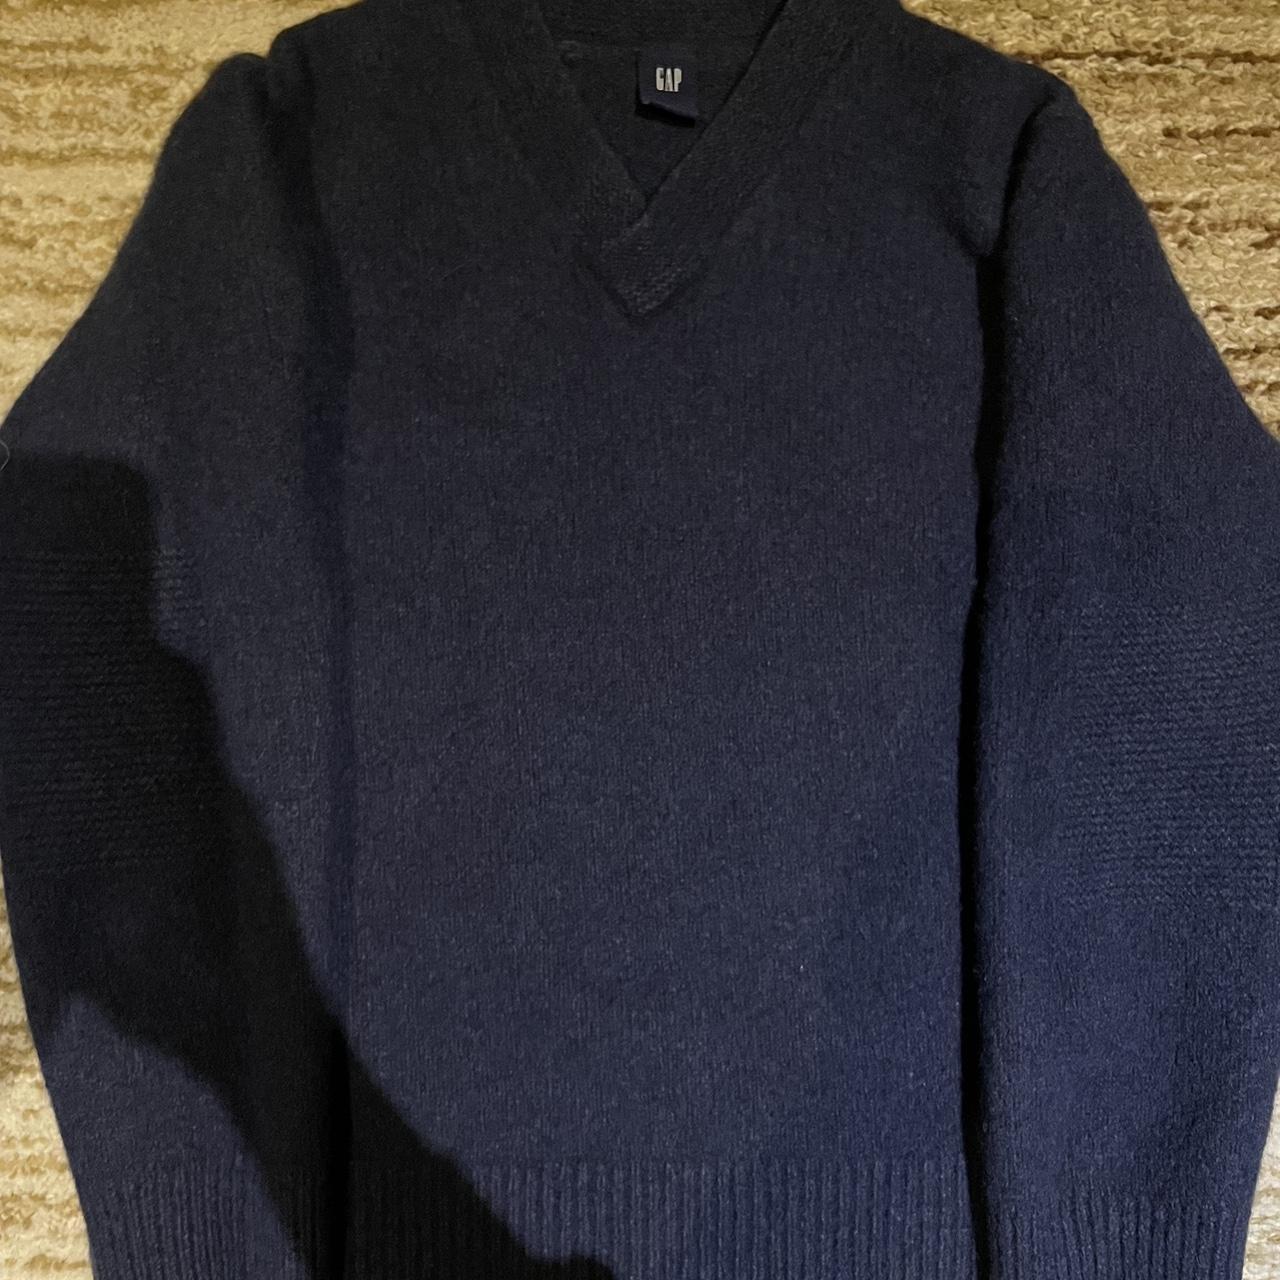 Wool Gap Sweater - Depop